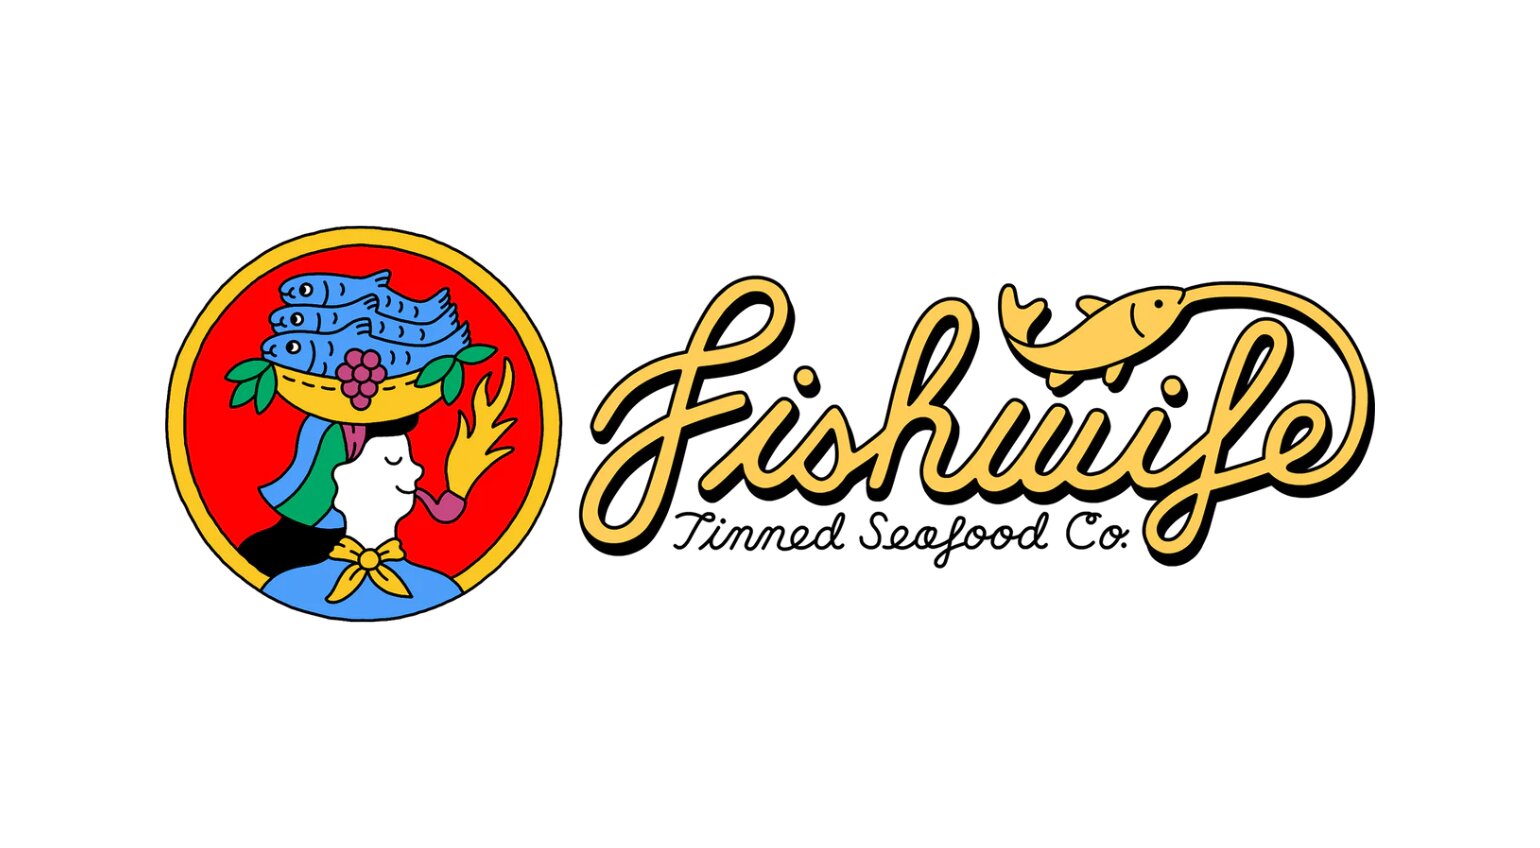 Fishwife Tinned Seafood Co. 